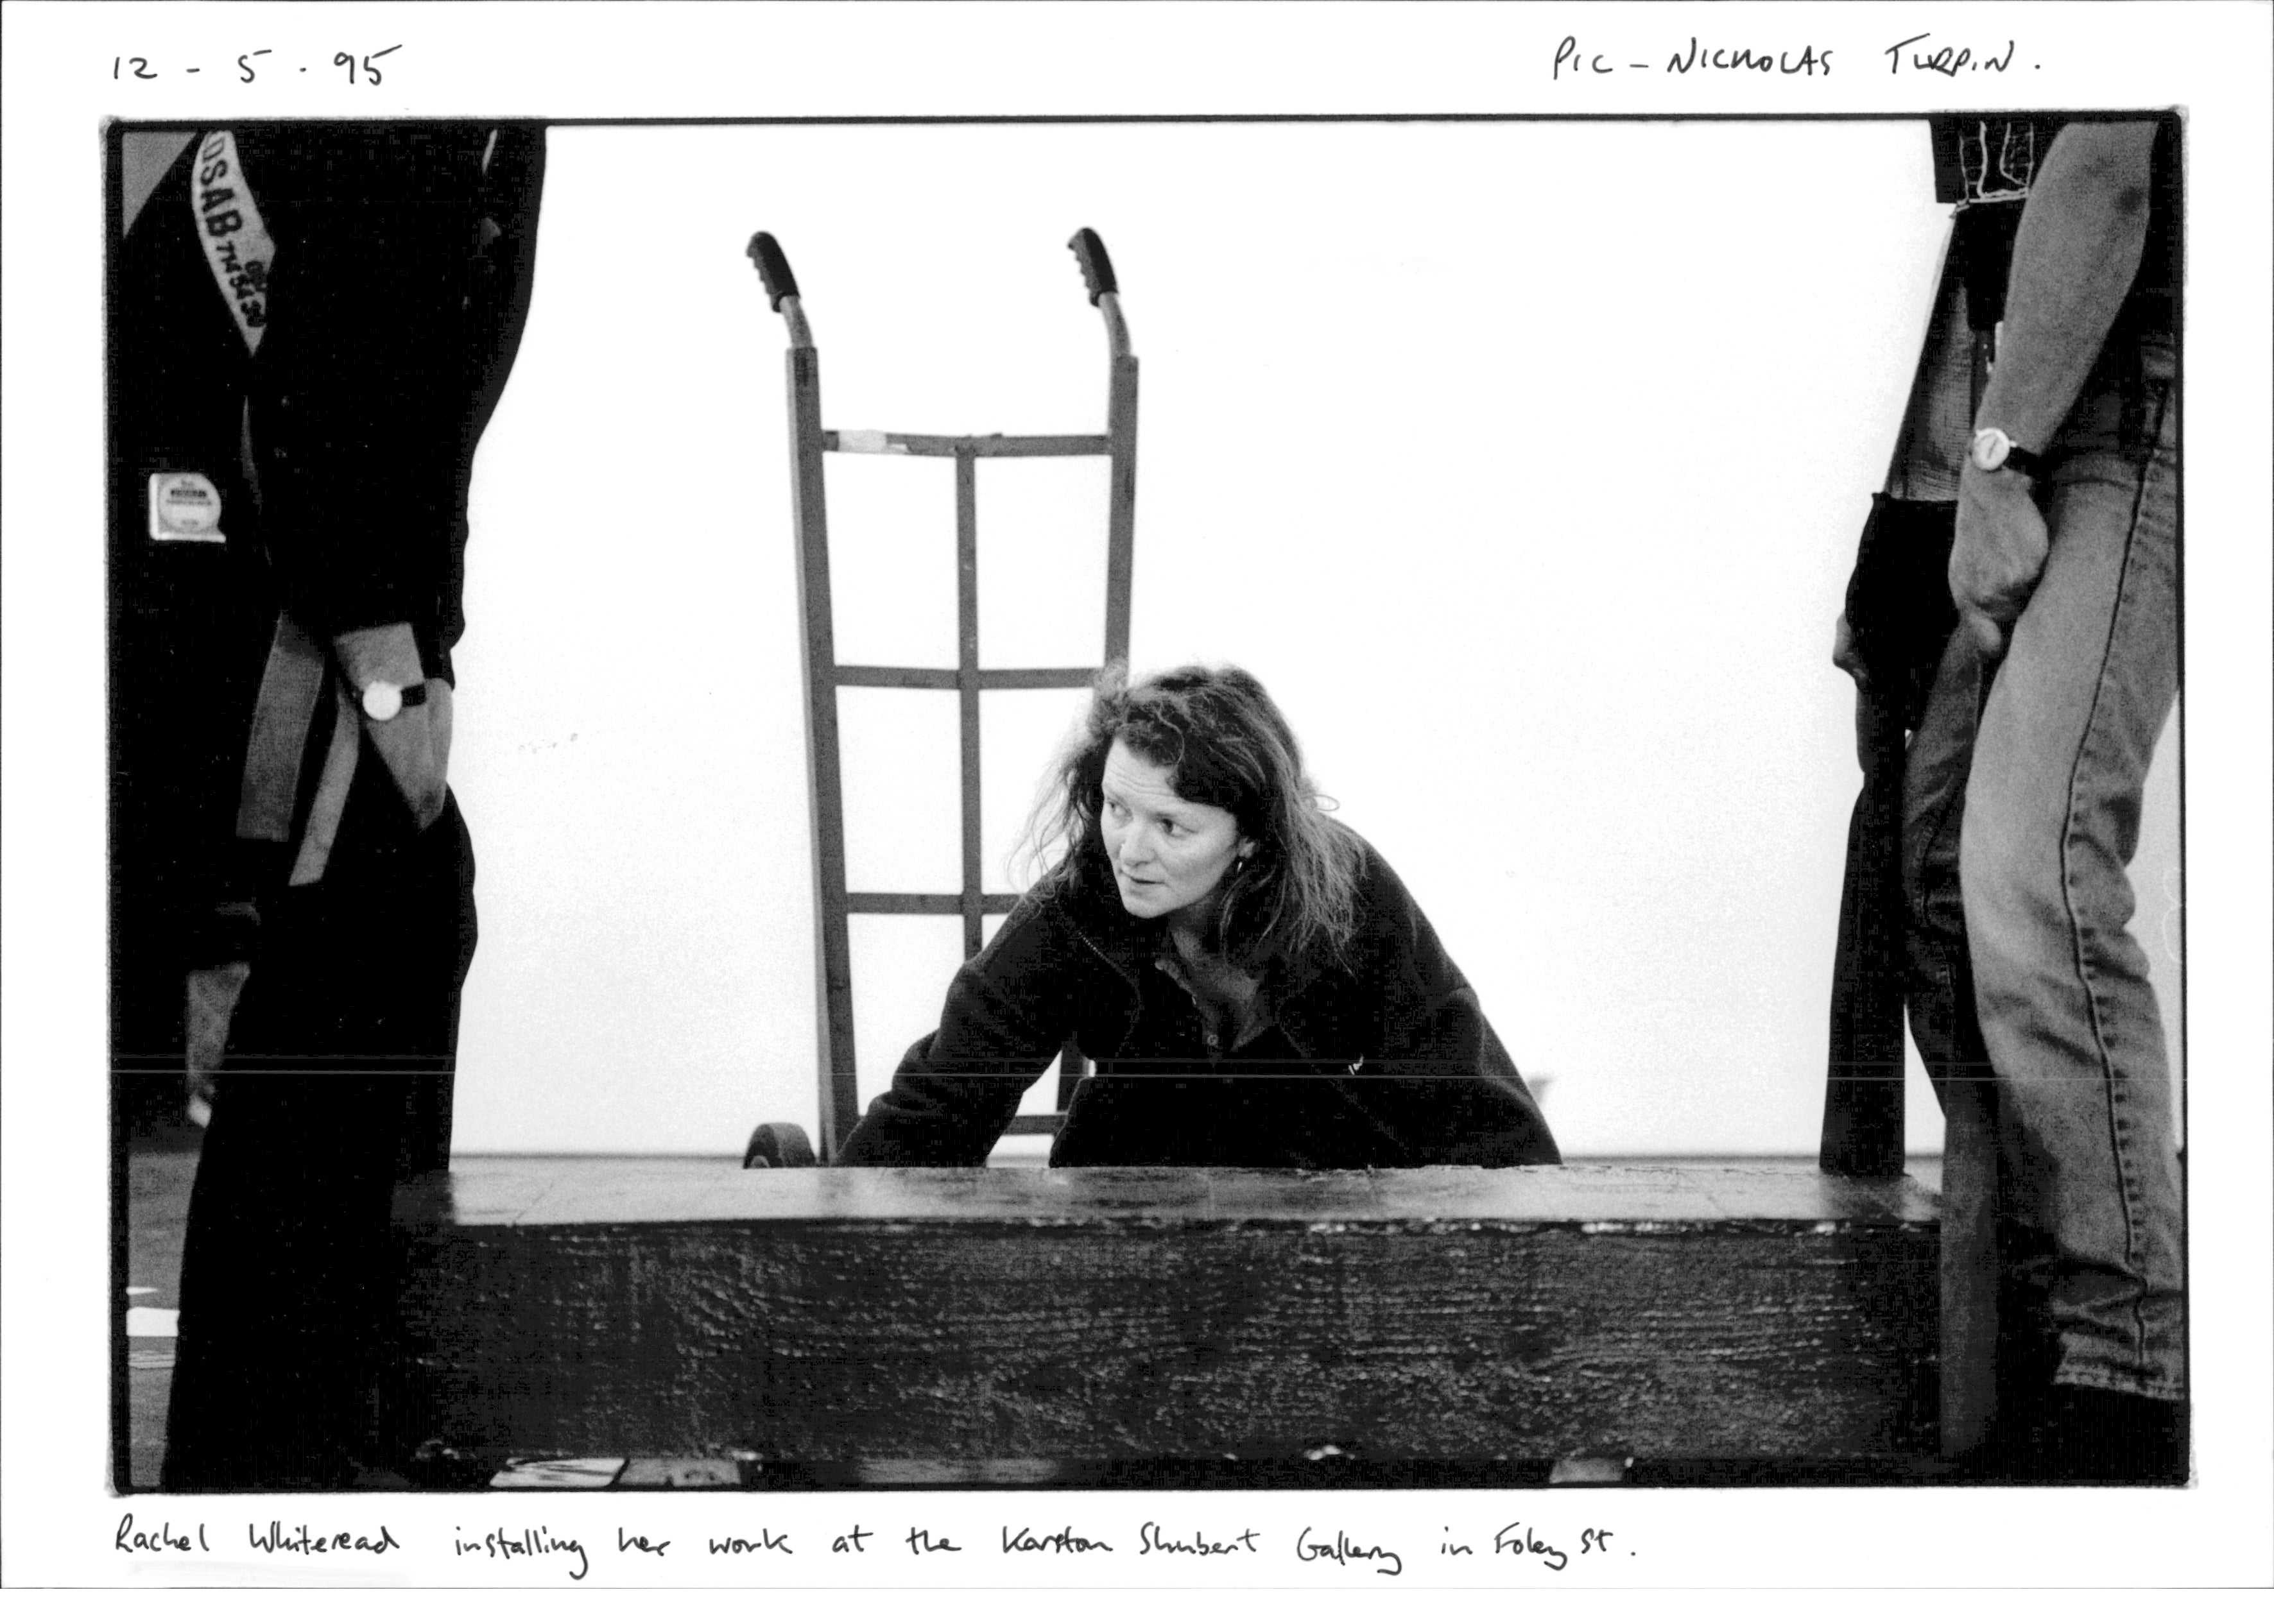 Rachel Whiteread installing her work at the Karston Shubert Gallery, 1995